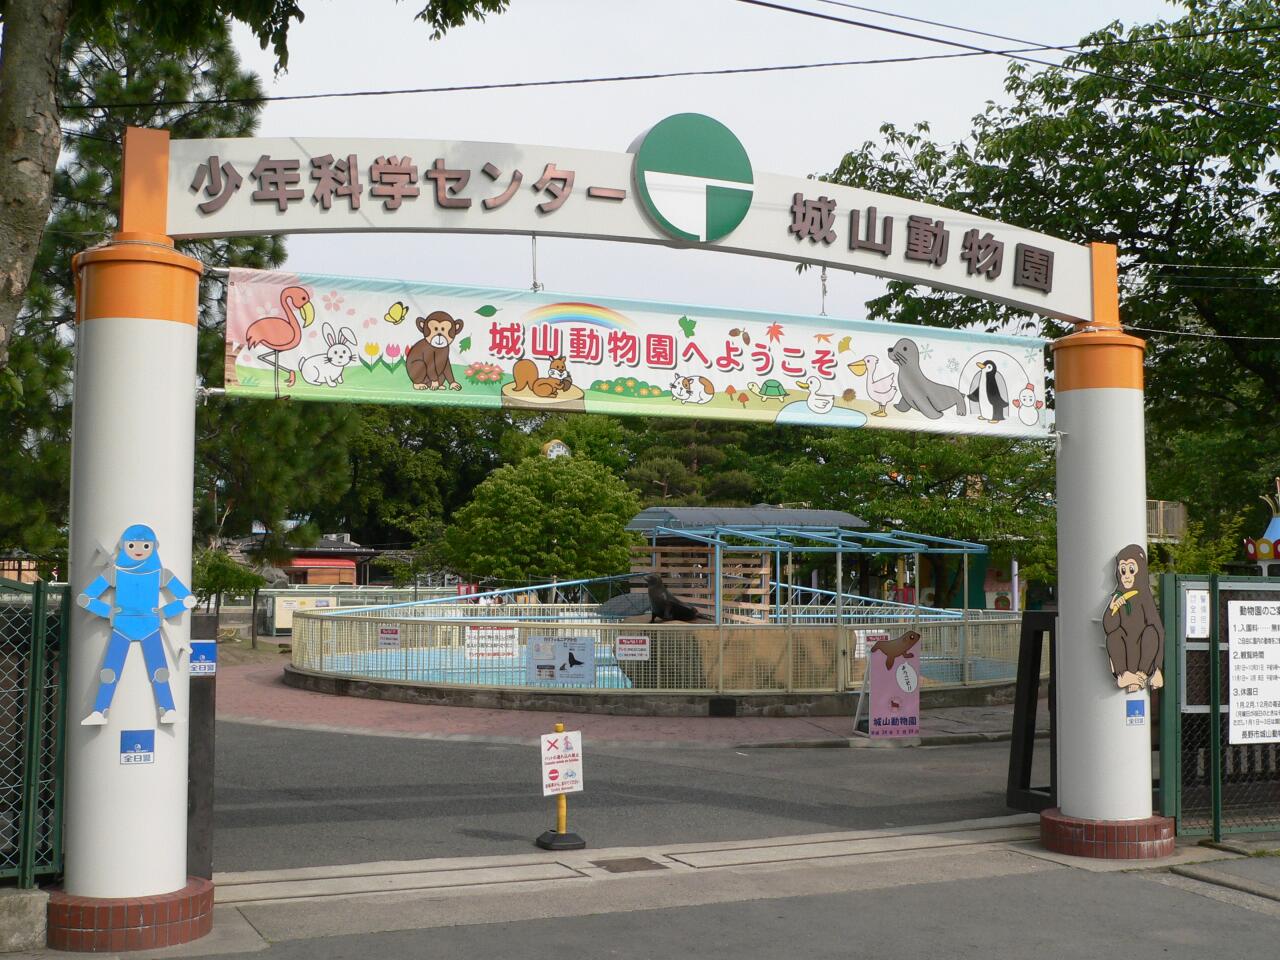 Jyoyama Zoo's image 1